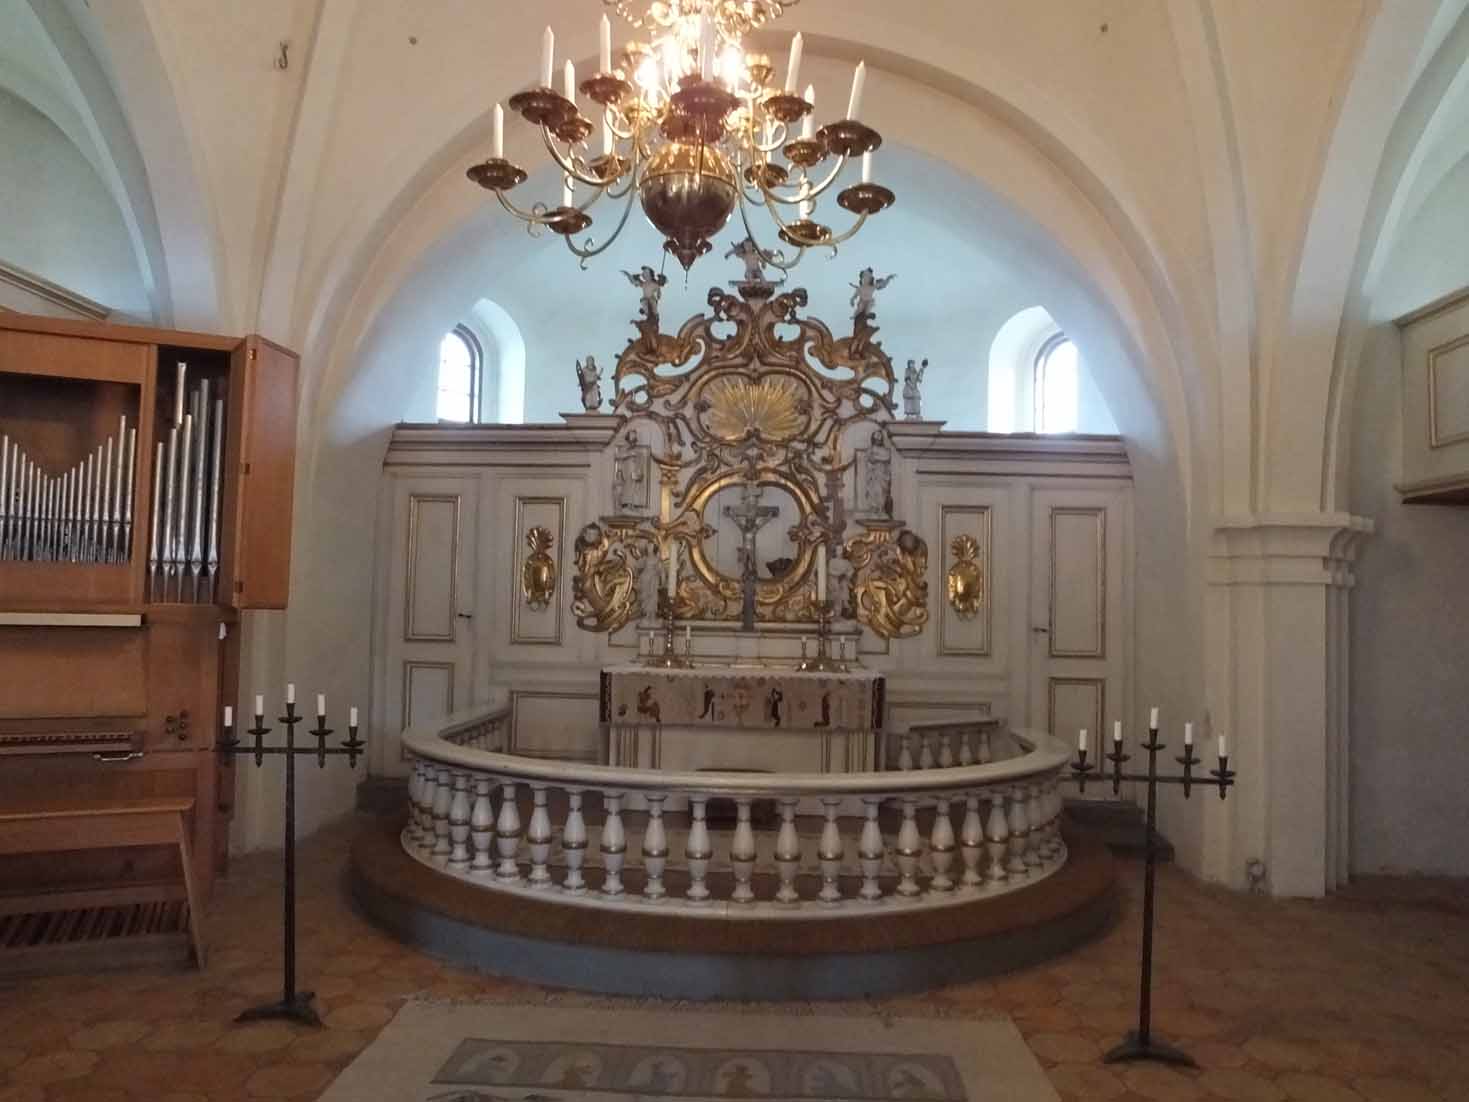 Koret i form av en altaruppställning i Bollerups kyrka är beläget i korsmitten.